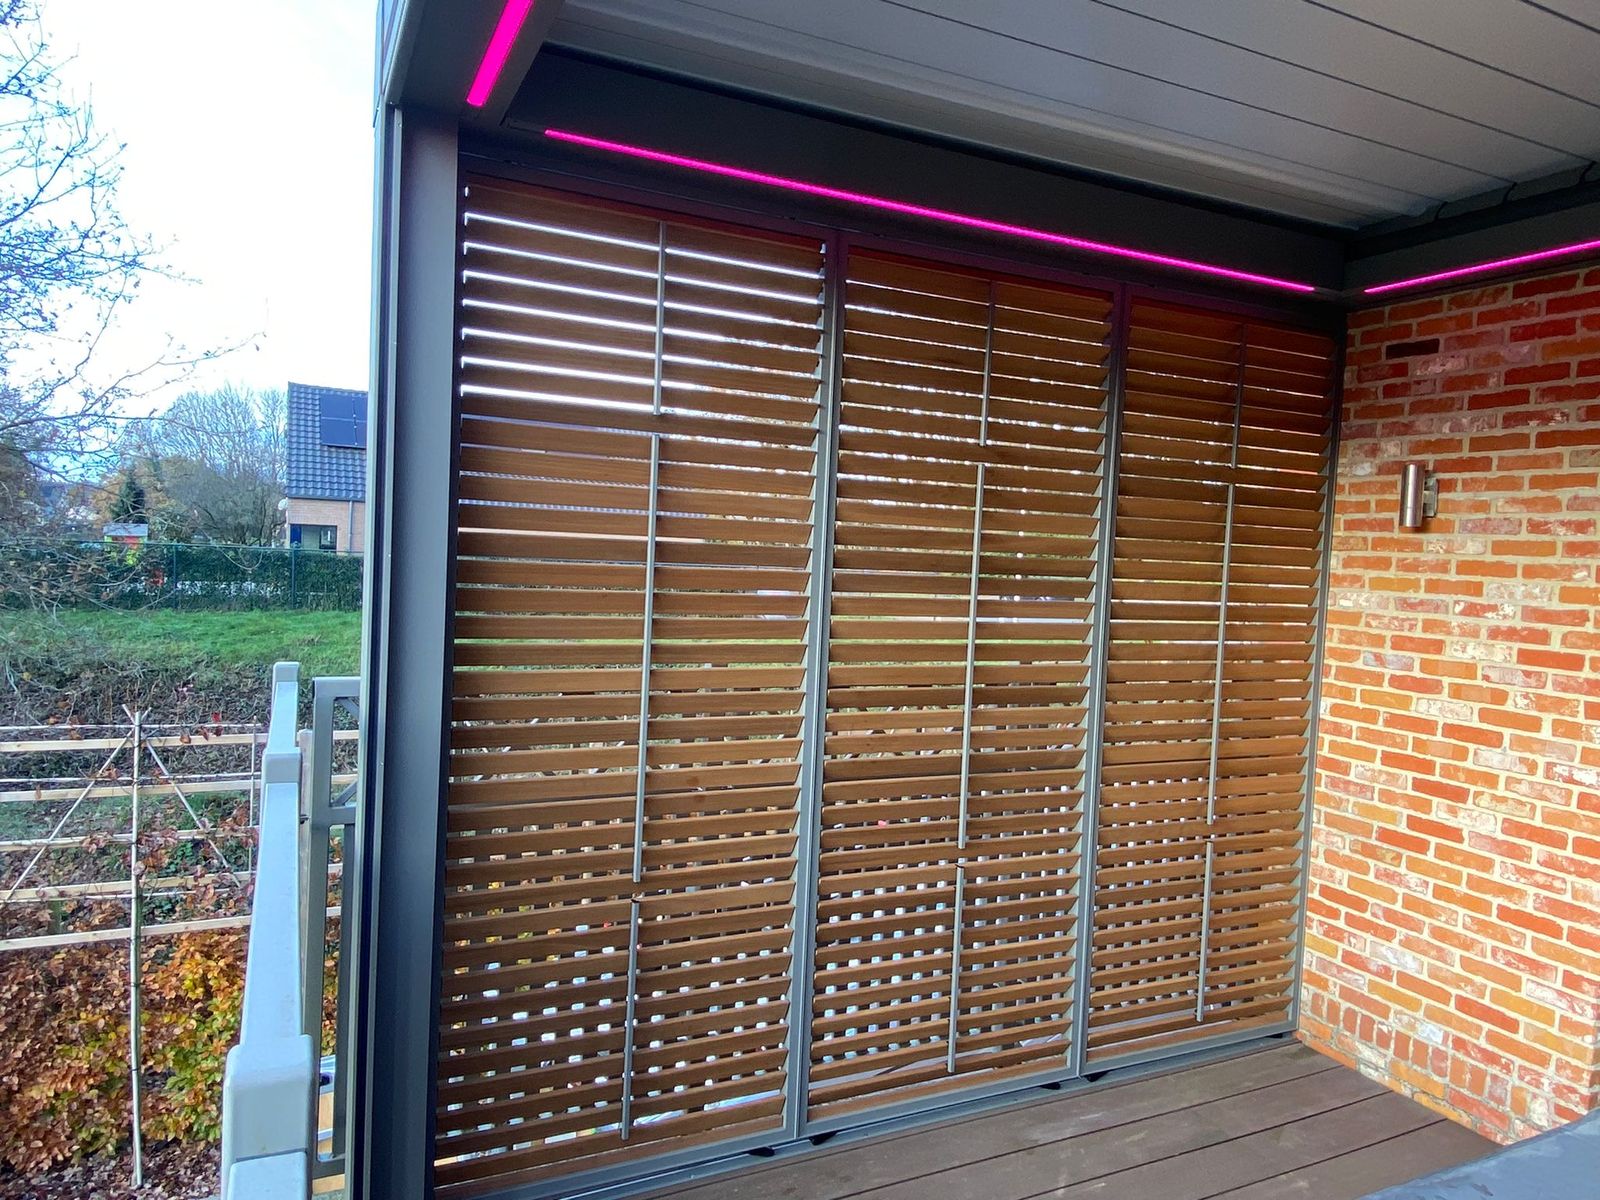 kantelbare shutters in ayous zorgen voor meer privacy en beschutting tegen regen en wind